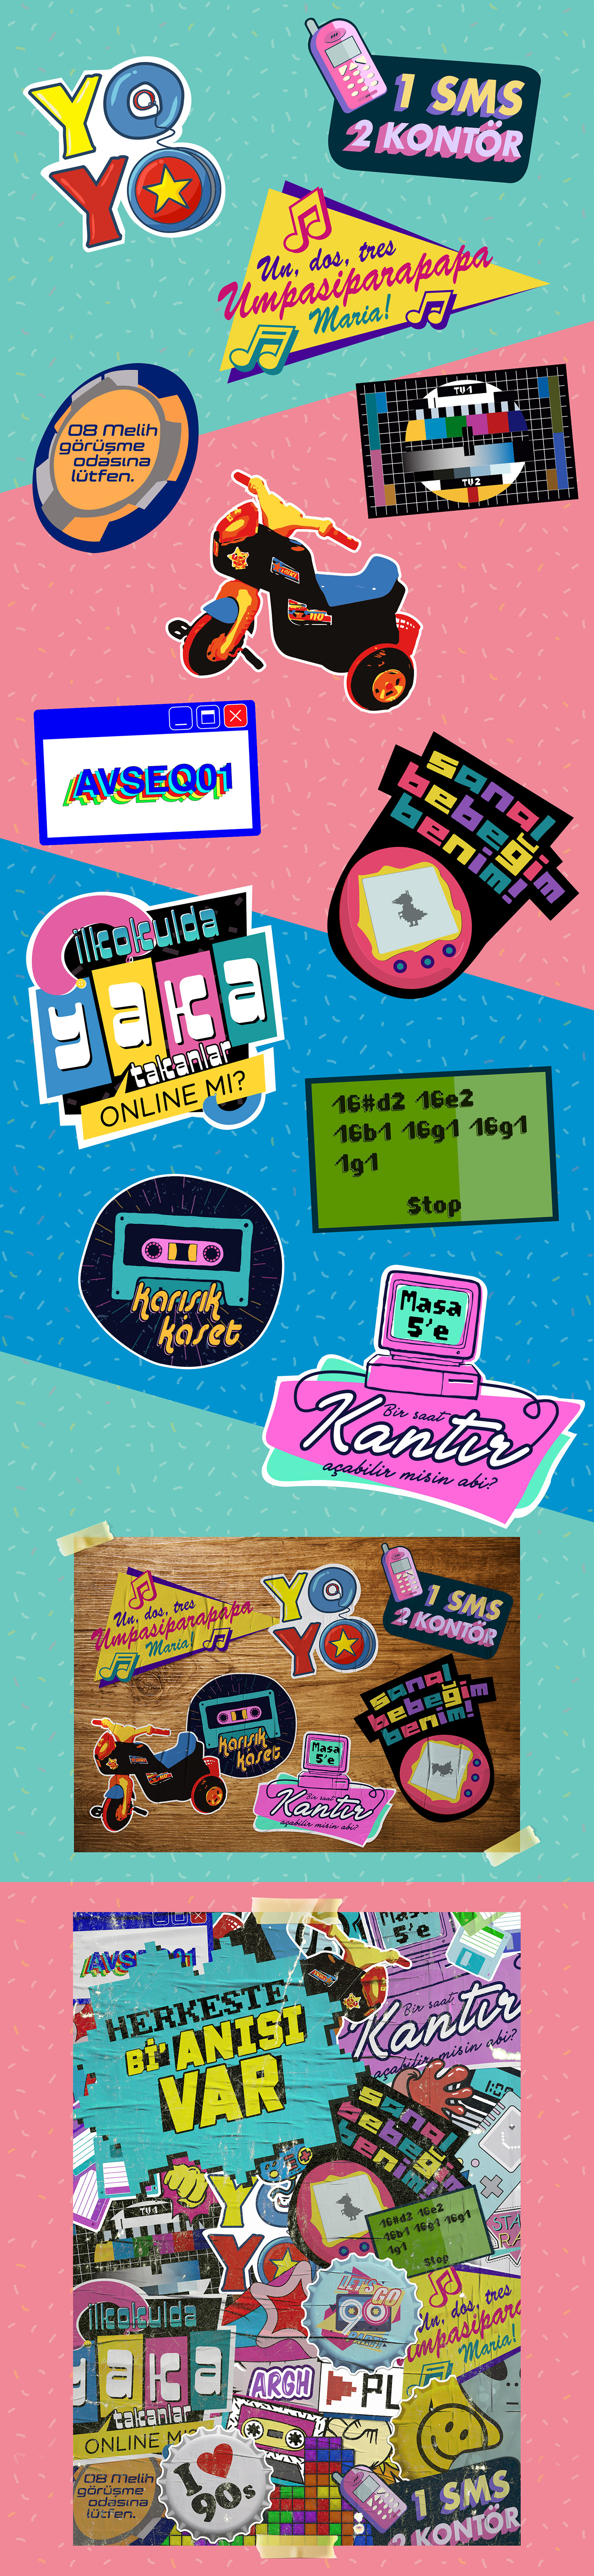 90's 90'lar sticker yoyo sanal bebek yaka error avseq01 SMS onlük yakası